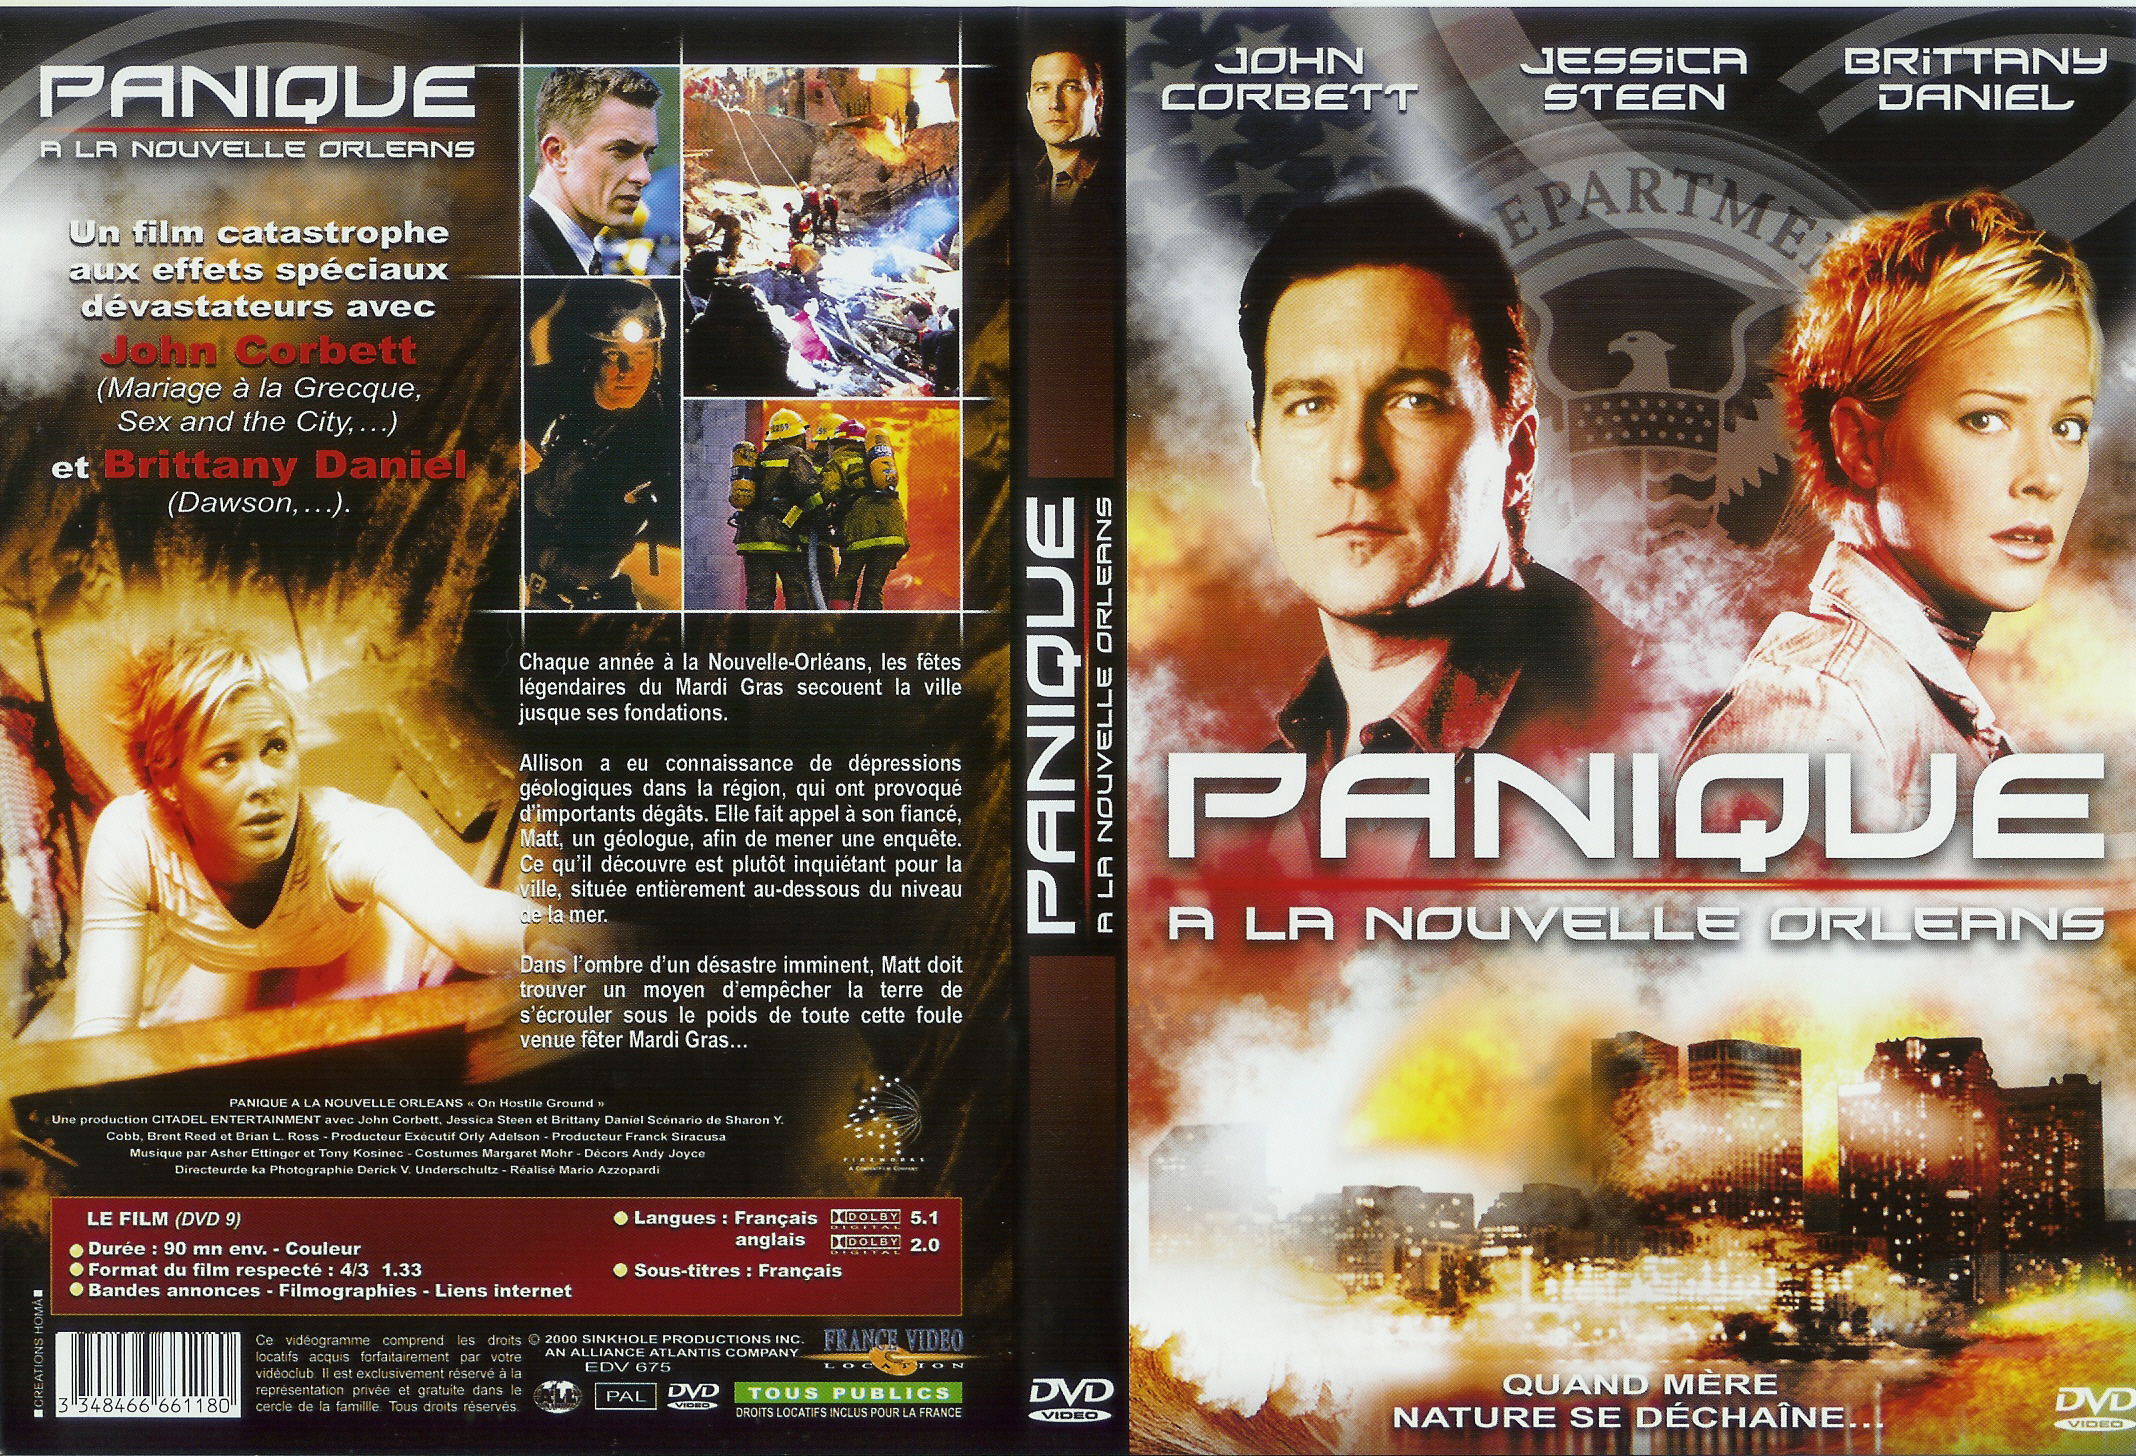 Jaquette DVD Panique  la Nouvelle-Orlans